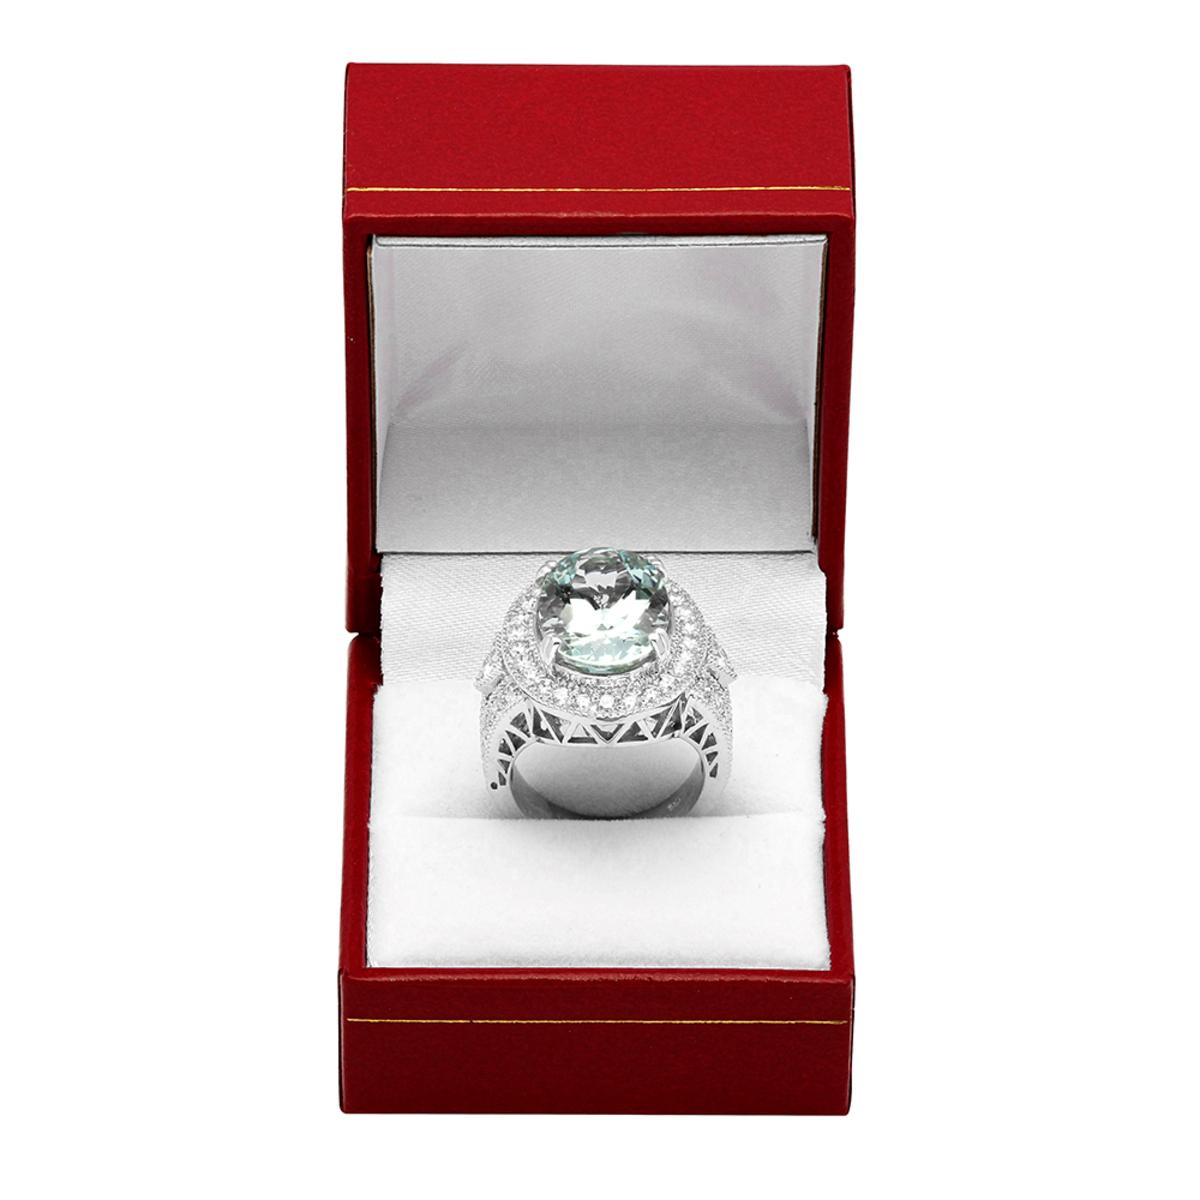 14k White Gold 9.46ct Aquamarine 1.91ct Diamond Ring